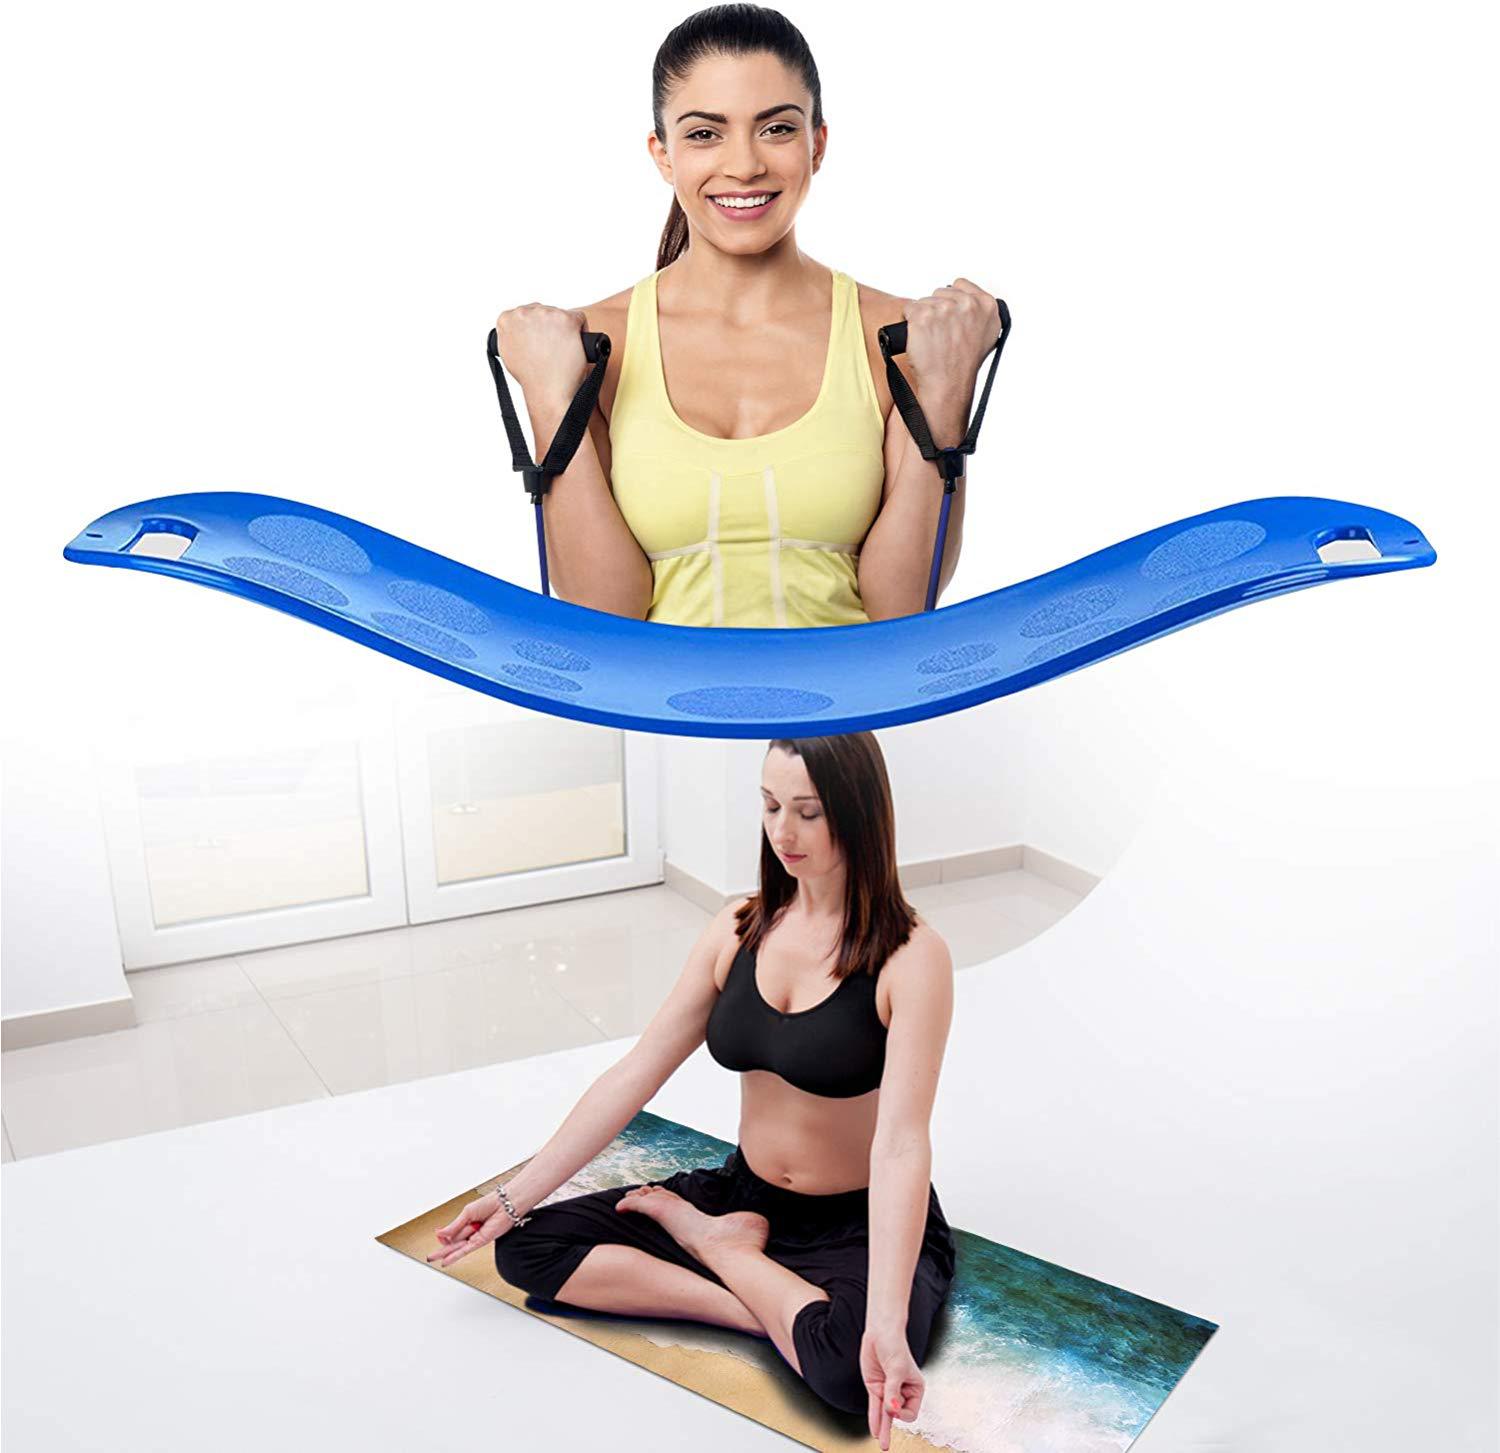  厂家直销平衡板滑板瑜伽辅助器材健身器材健身瑜伽板可定制详情2